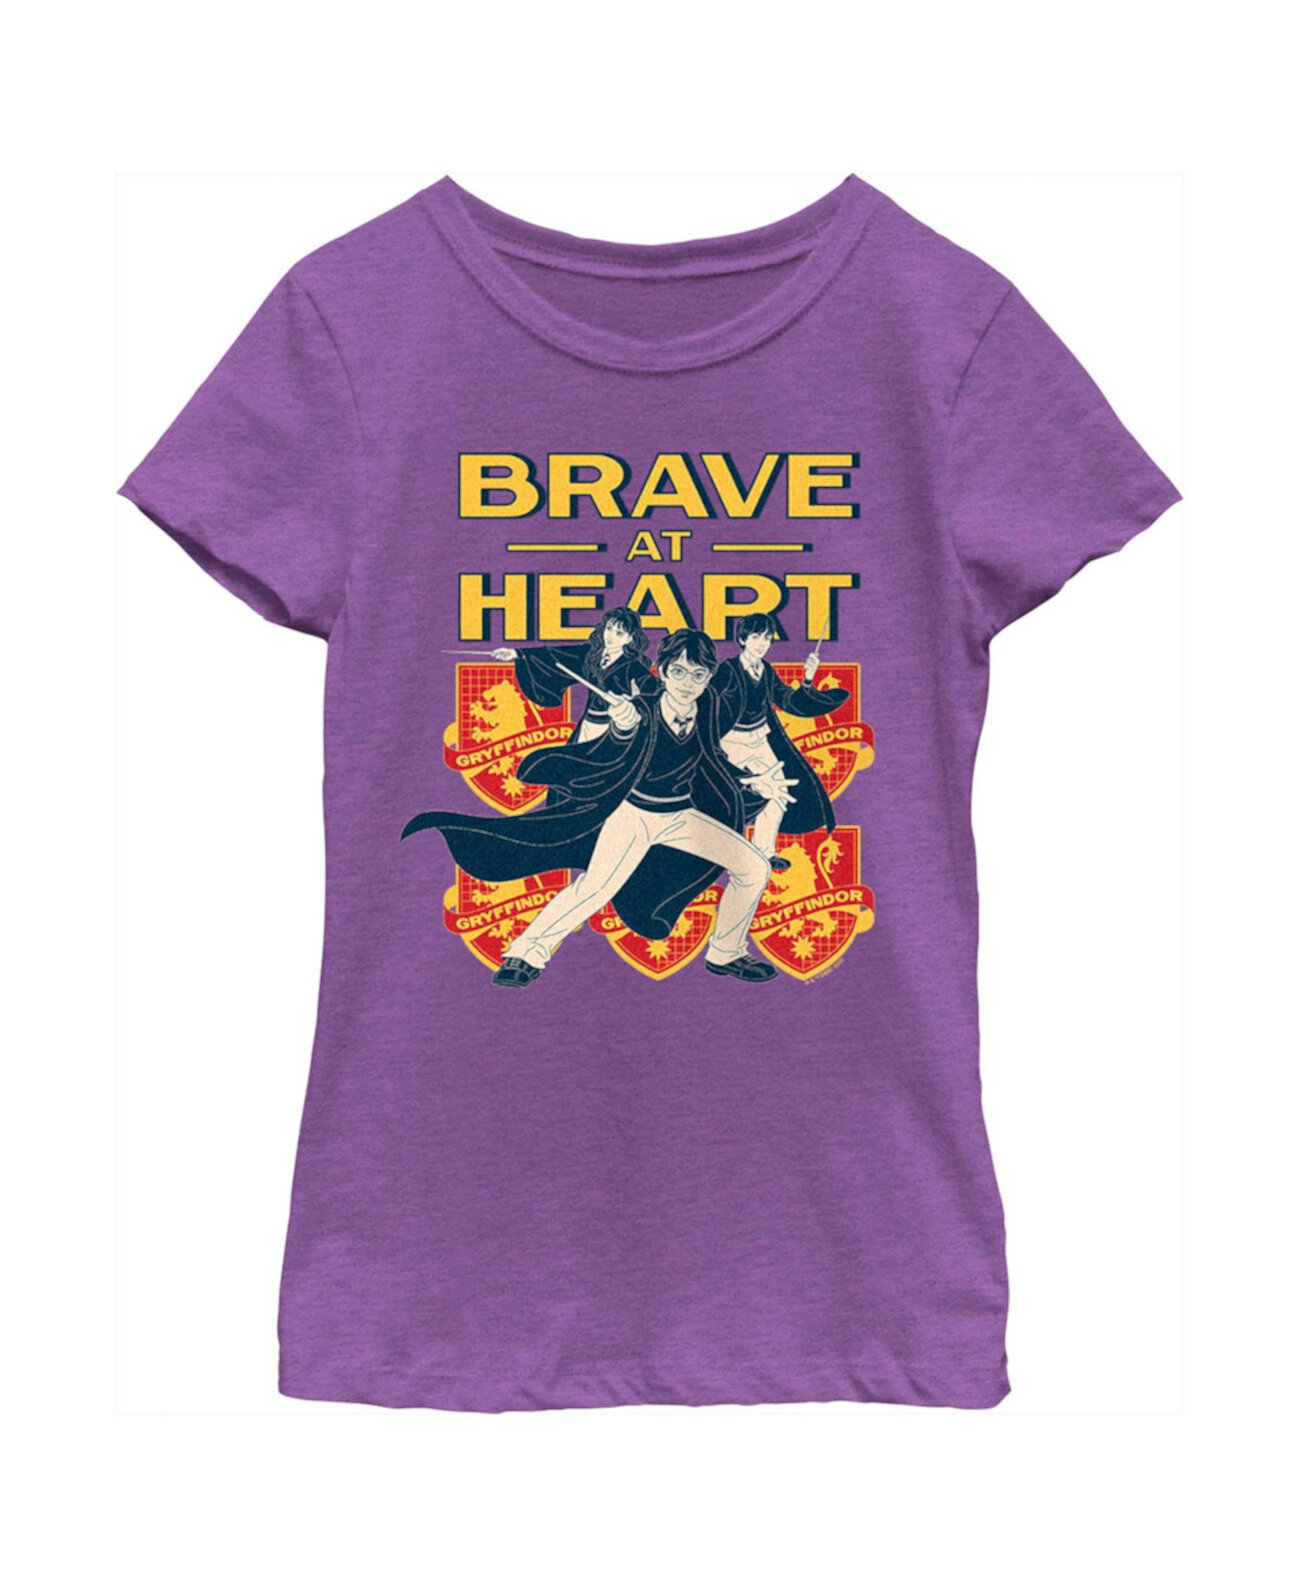 Детская футболка «Гарри Поттер Гриффиндор Храбрый сердцем» для девочек Warner Bros.